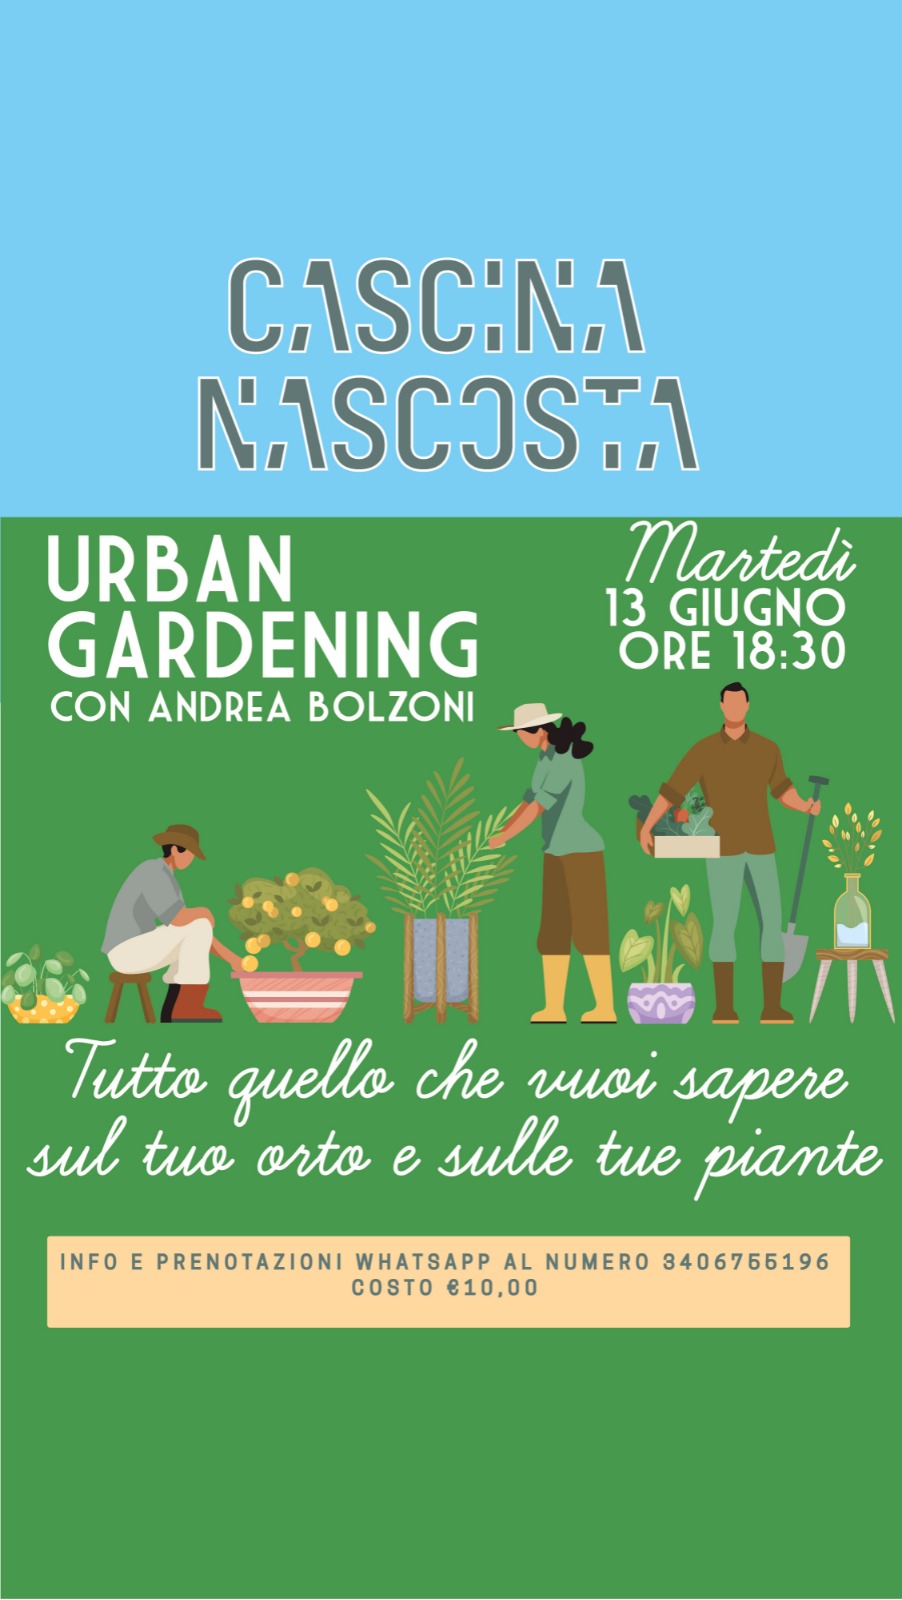 Urban gardening con Andrea Bolzoni